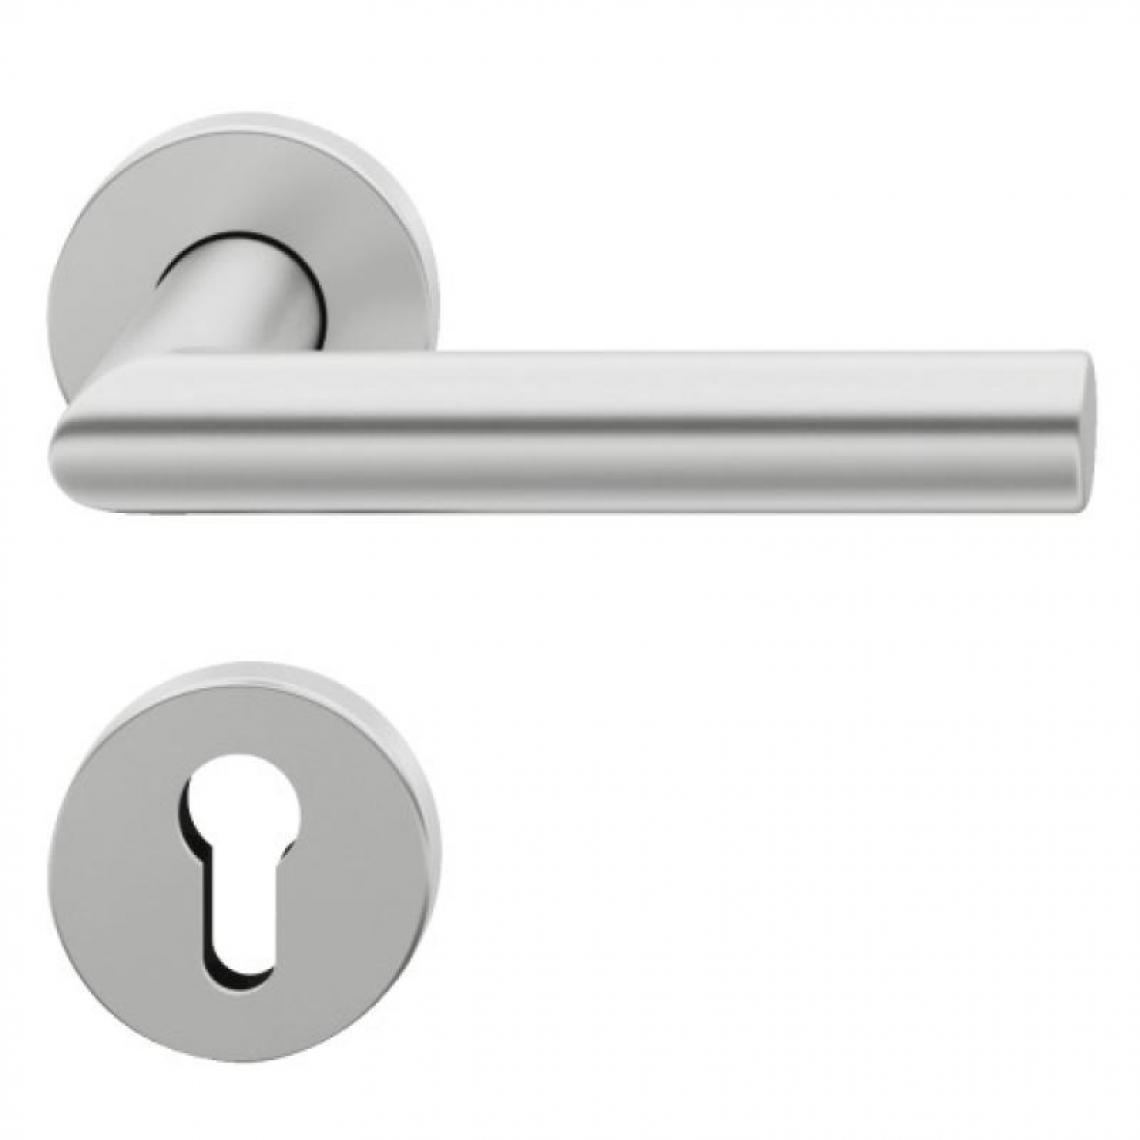 Fsb - Béquille double sur rosaces série 1076 aluminium anodisé avec rosaces clé - Poignée de porte